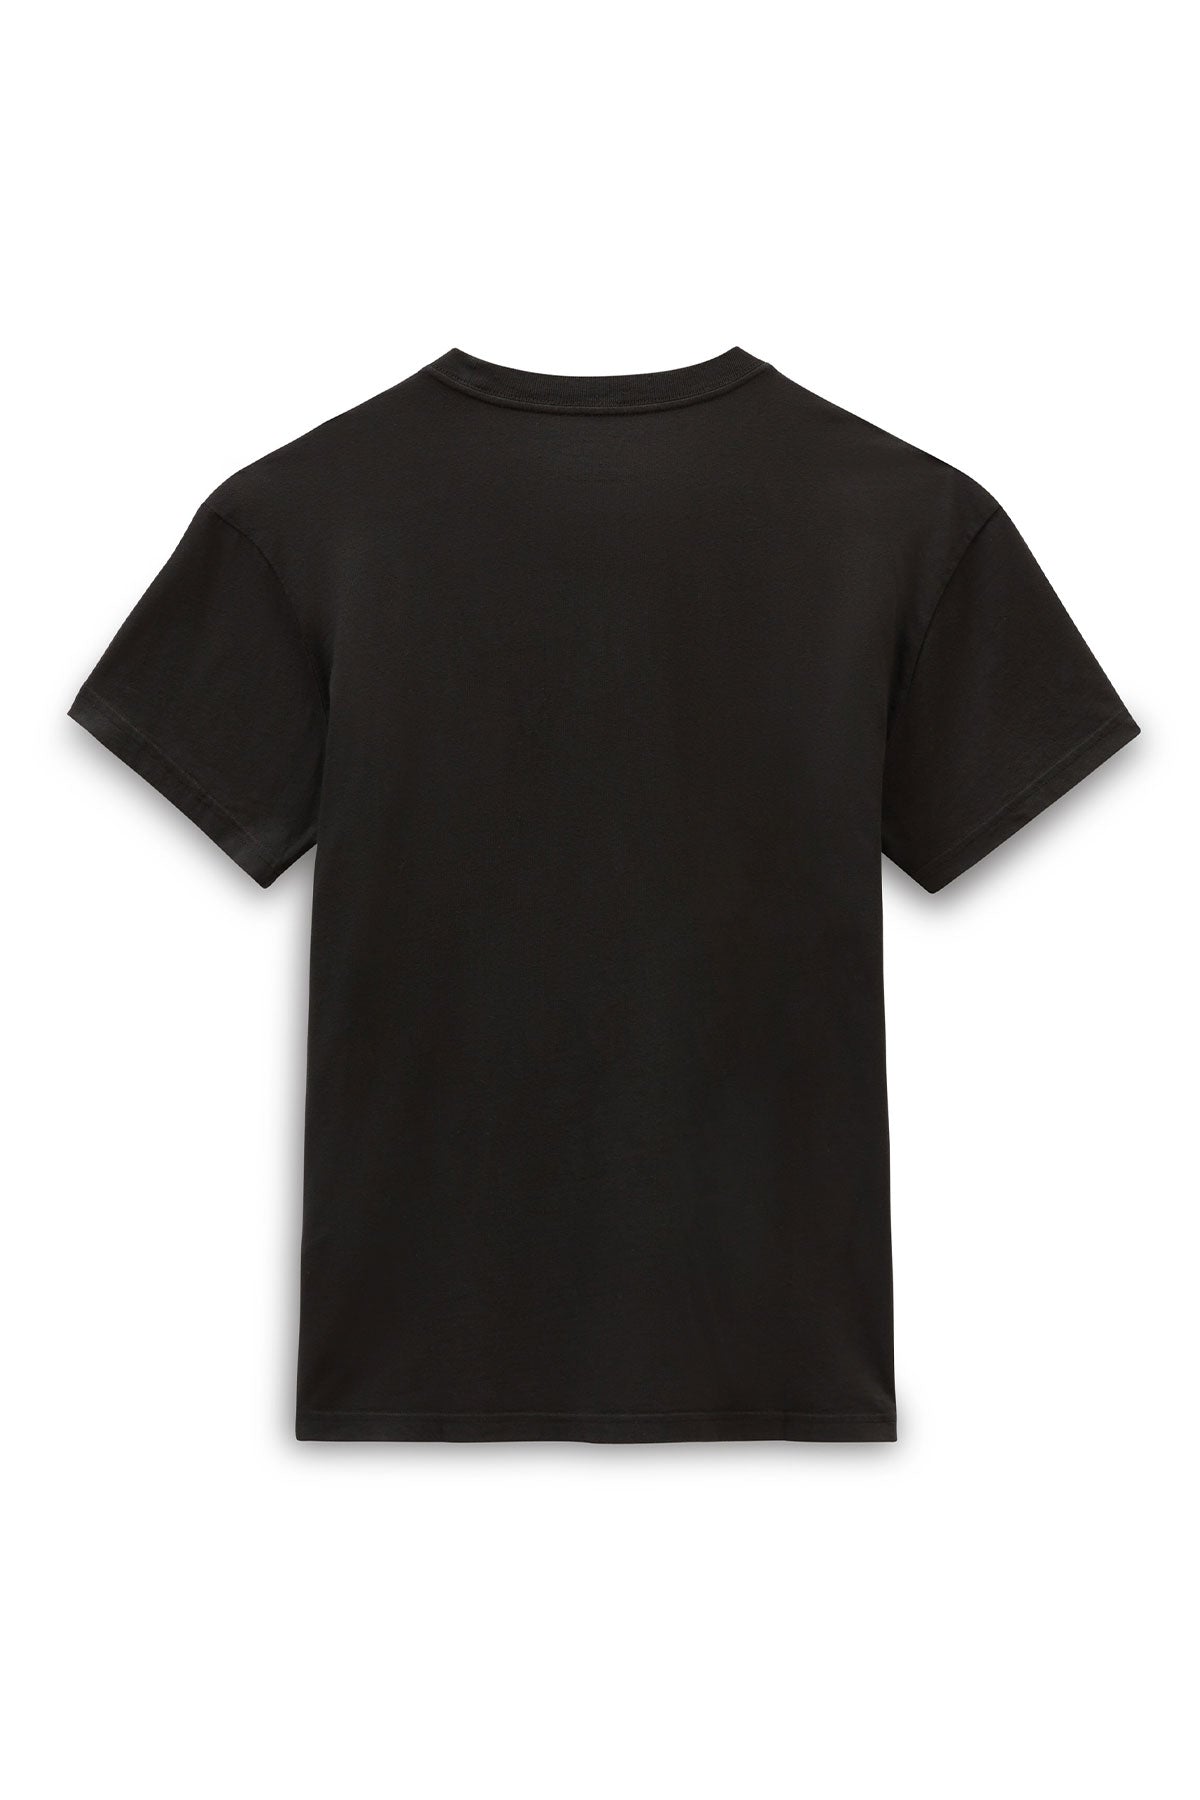 ואנס חולצת טישירט אוברסייז Vivid Dreams בצבע אפור כהה לנשים-Vans-XS-נאקו